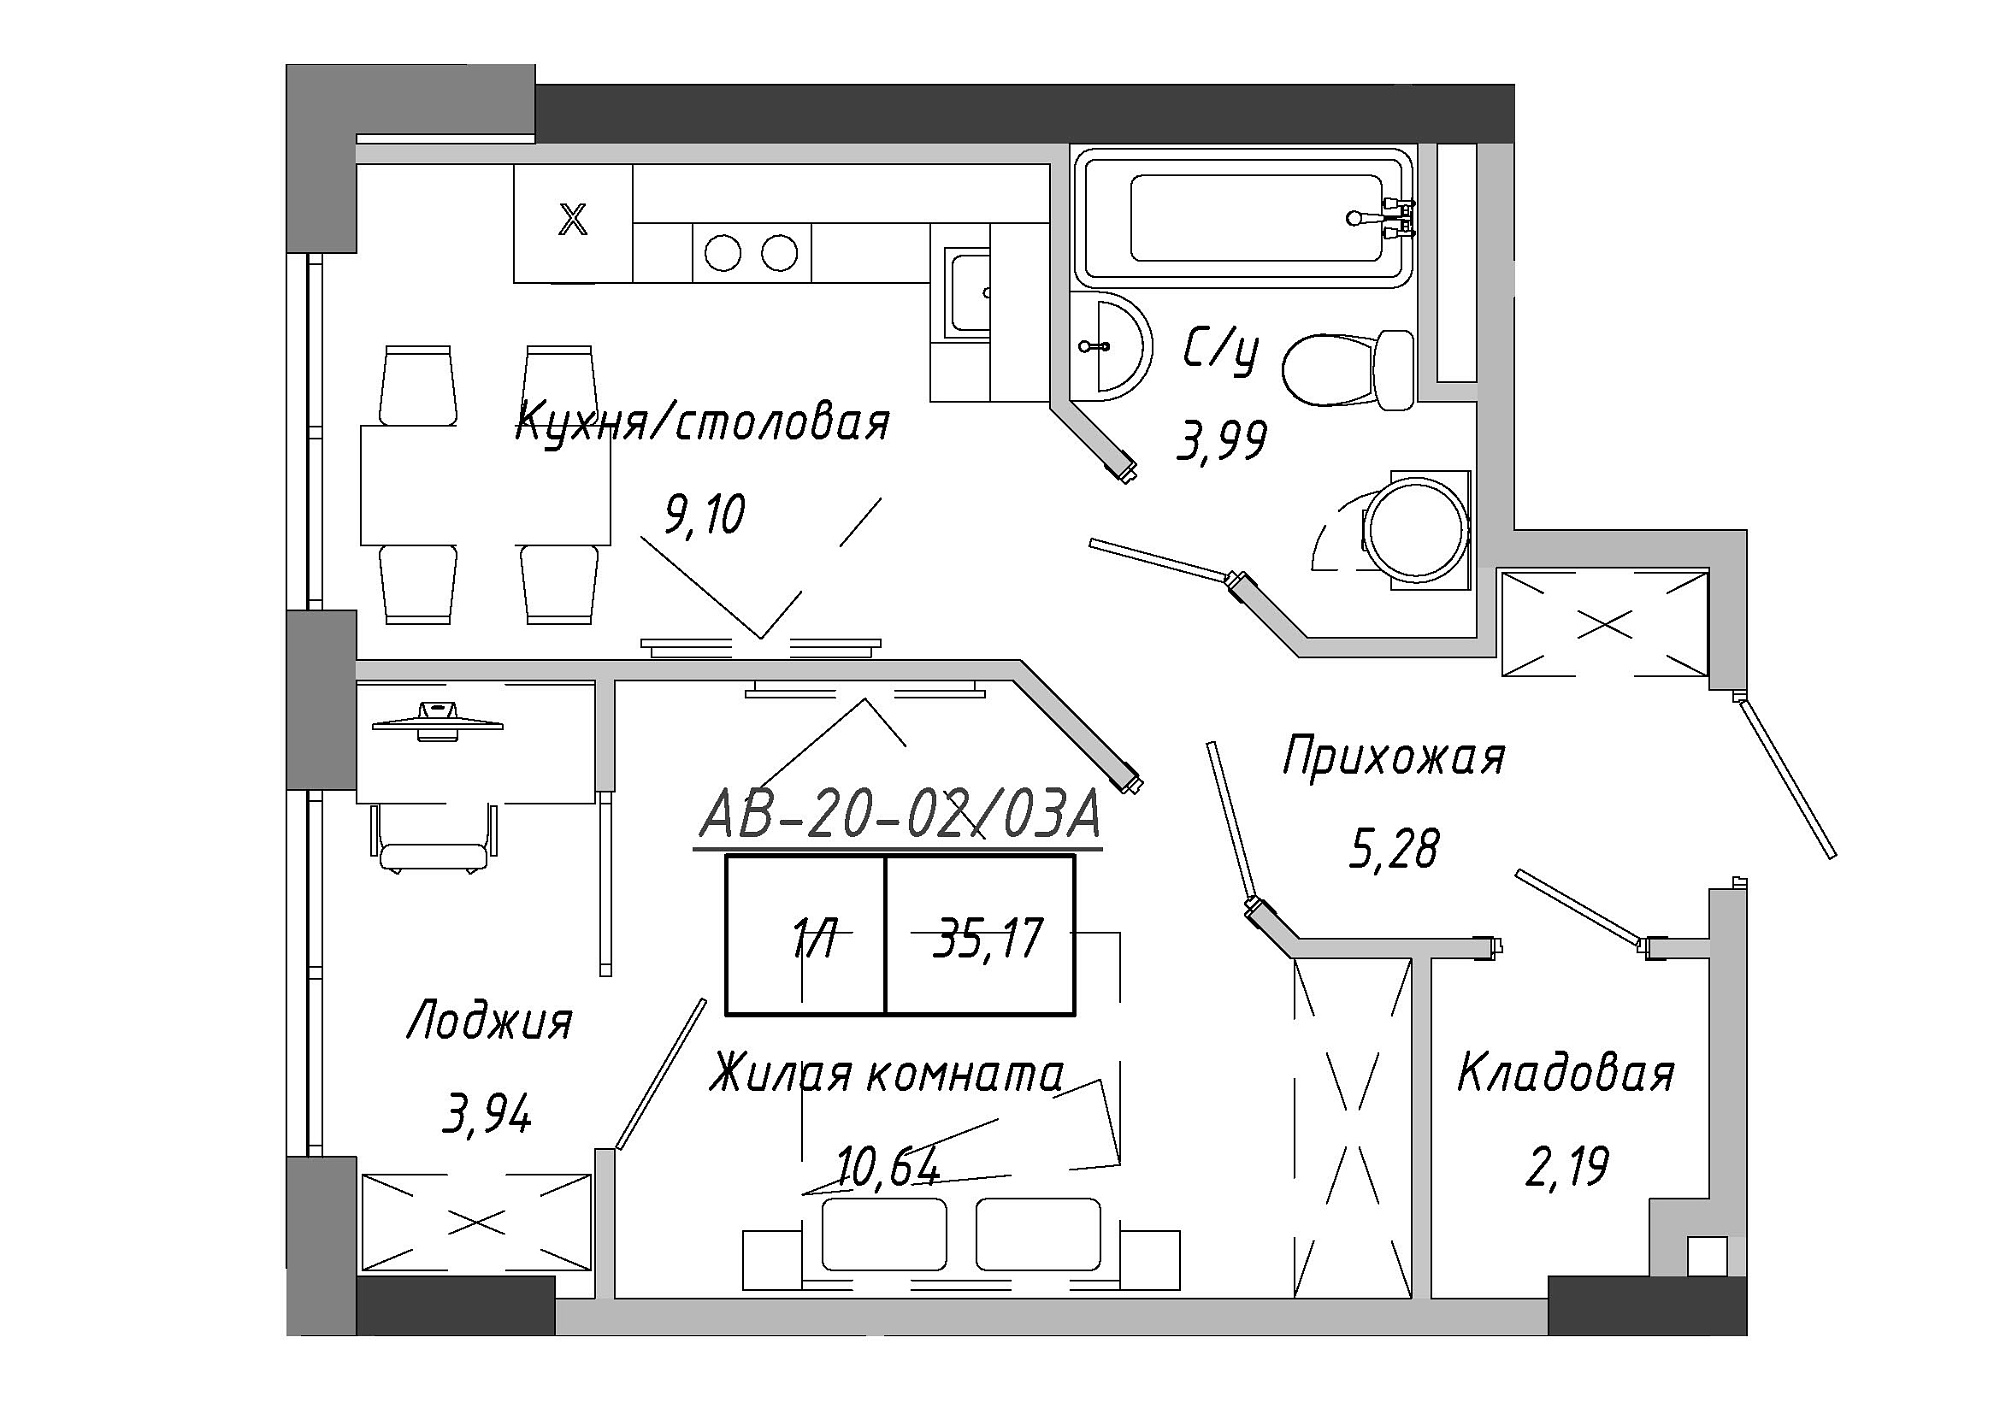 Планировка 1-к квартира площей 35.17м2, AB-20-02/0003а.